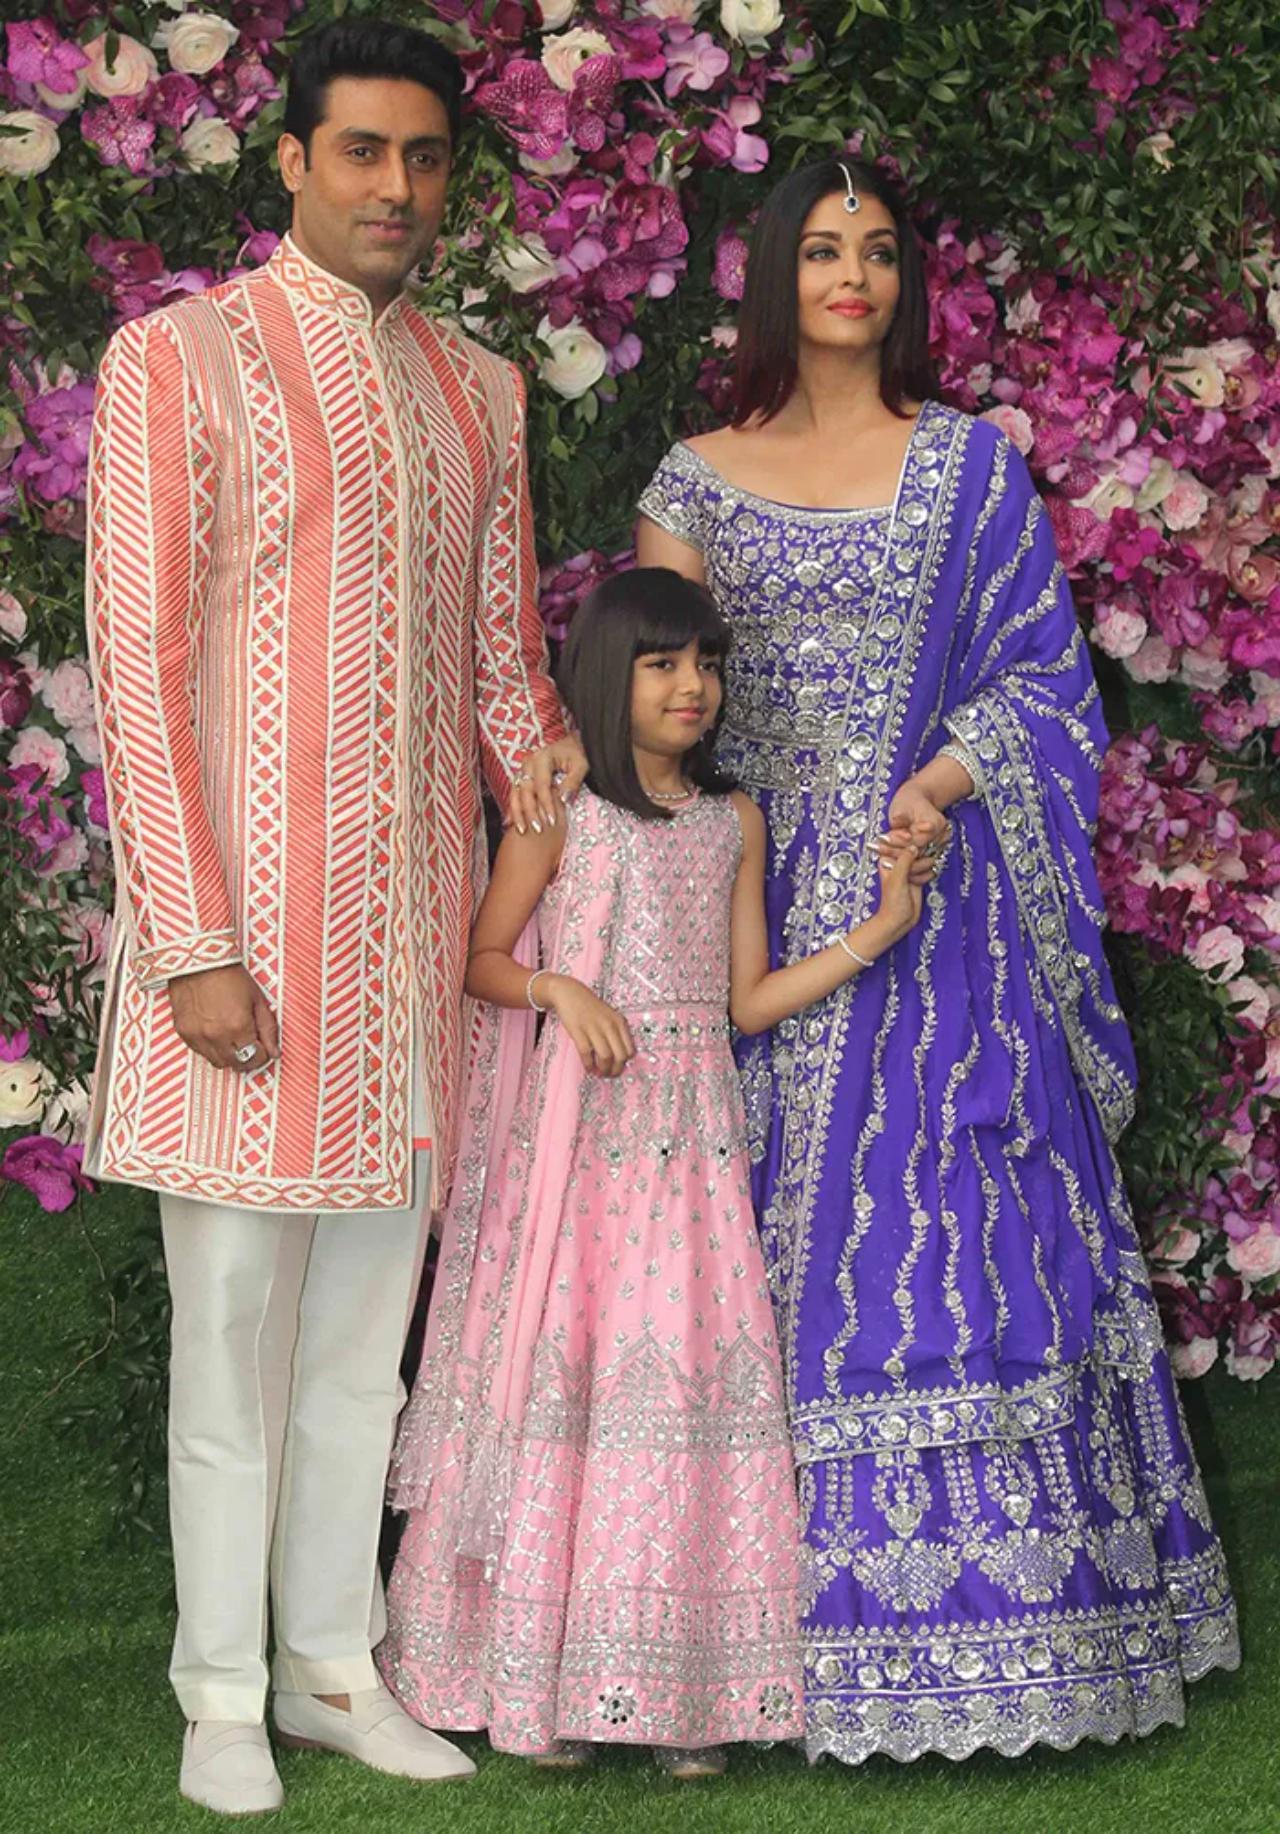 Aishwarya Rai Bachchan
Aishwarya wore a bold purple lehenga for Akash and Shloka Ambani's wedding. We know she turned head - we were definitely drawn in!